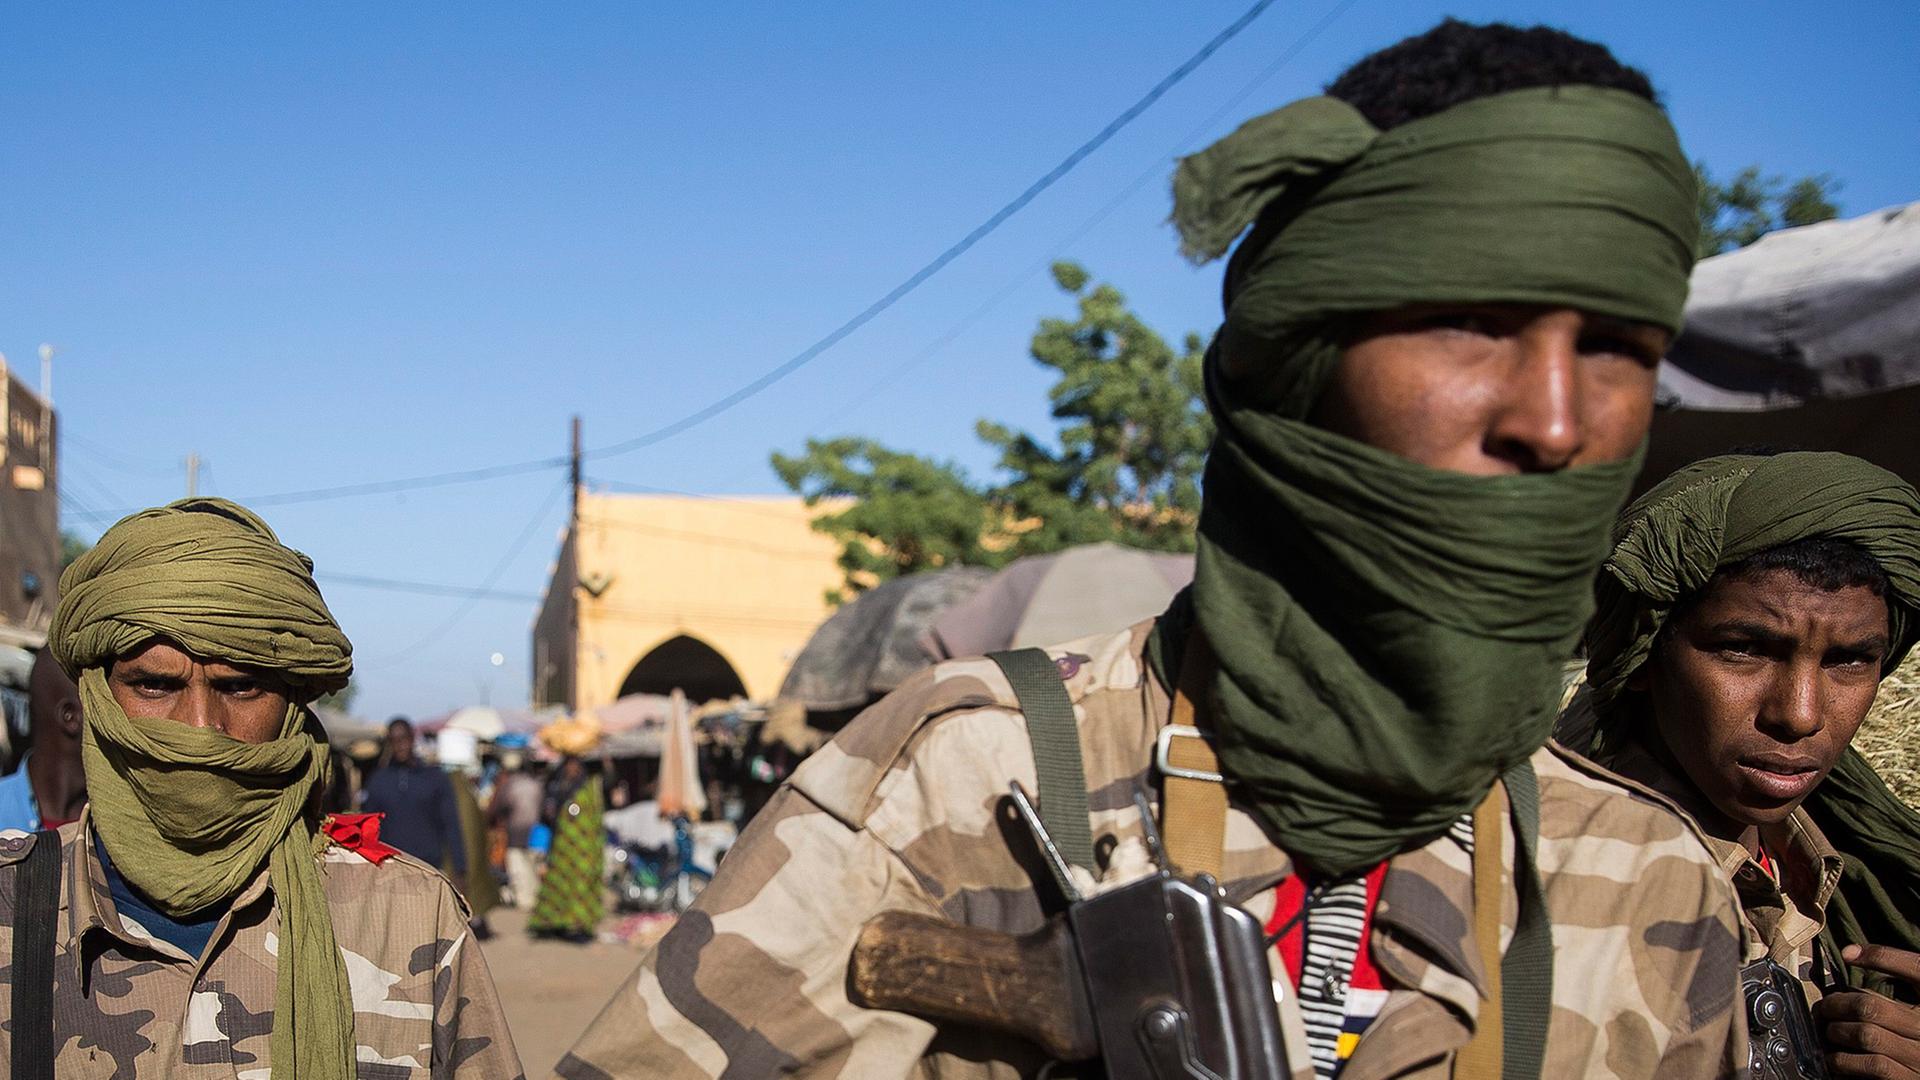 Malische Soldaten patrollieren am 07.02.2013 auf einem Markt in Gao (Nord Mali).